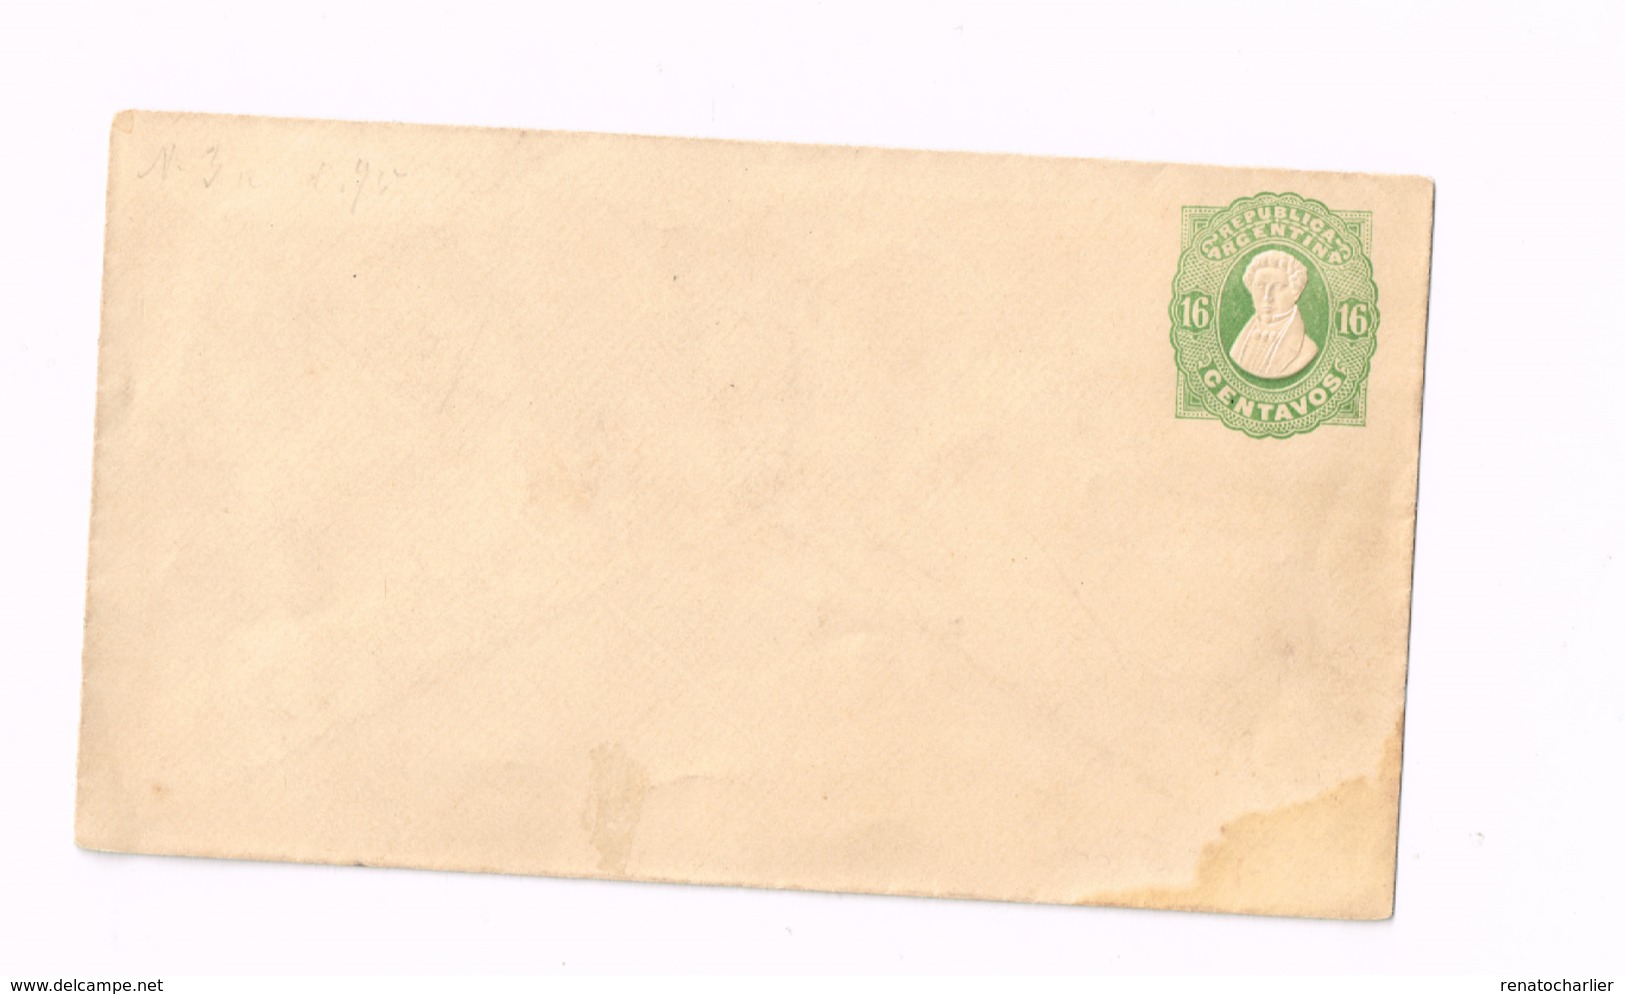 Entier Postal à 16 Centavos (Enveloppe) - Entiers Postaux